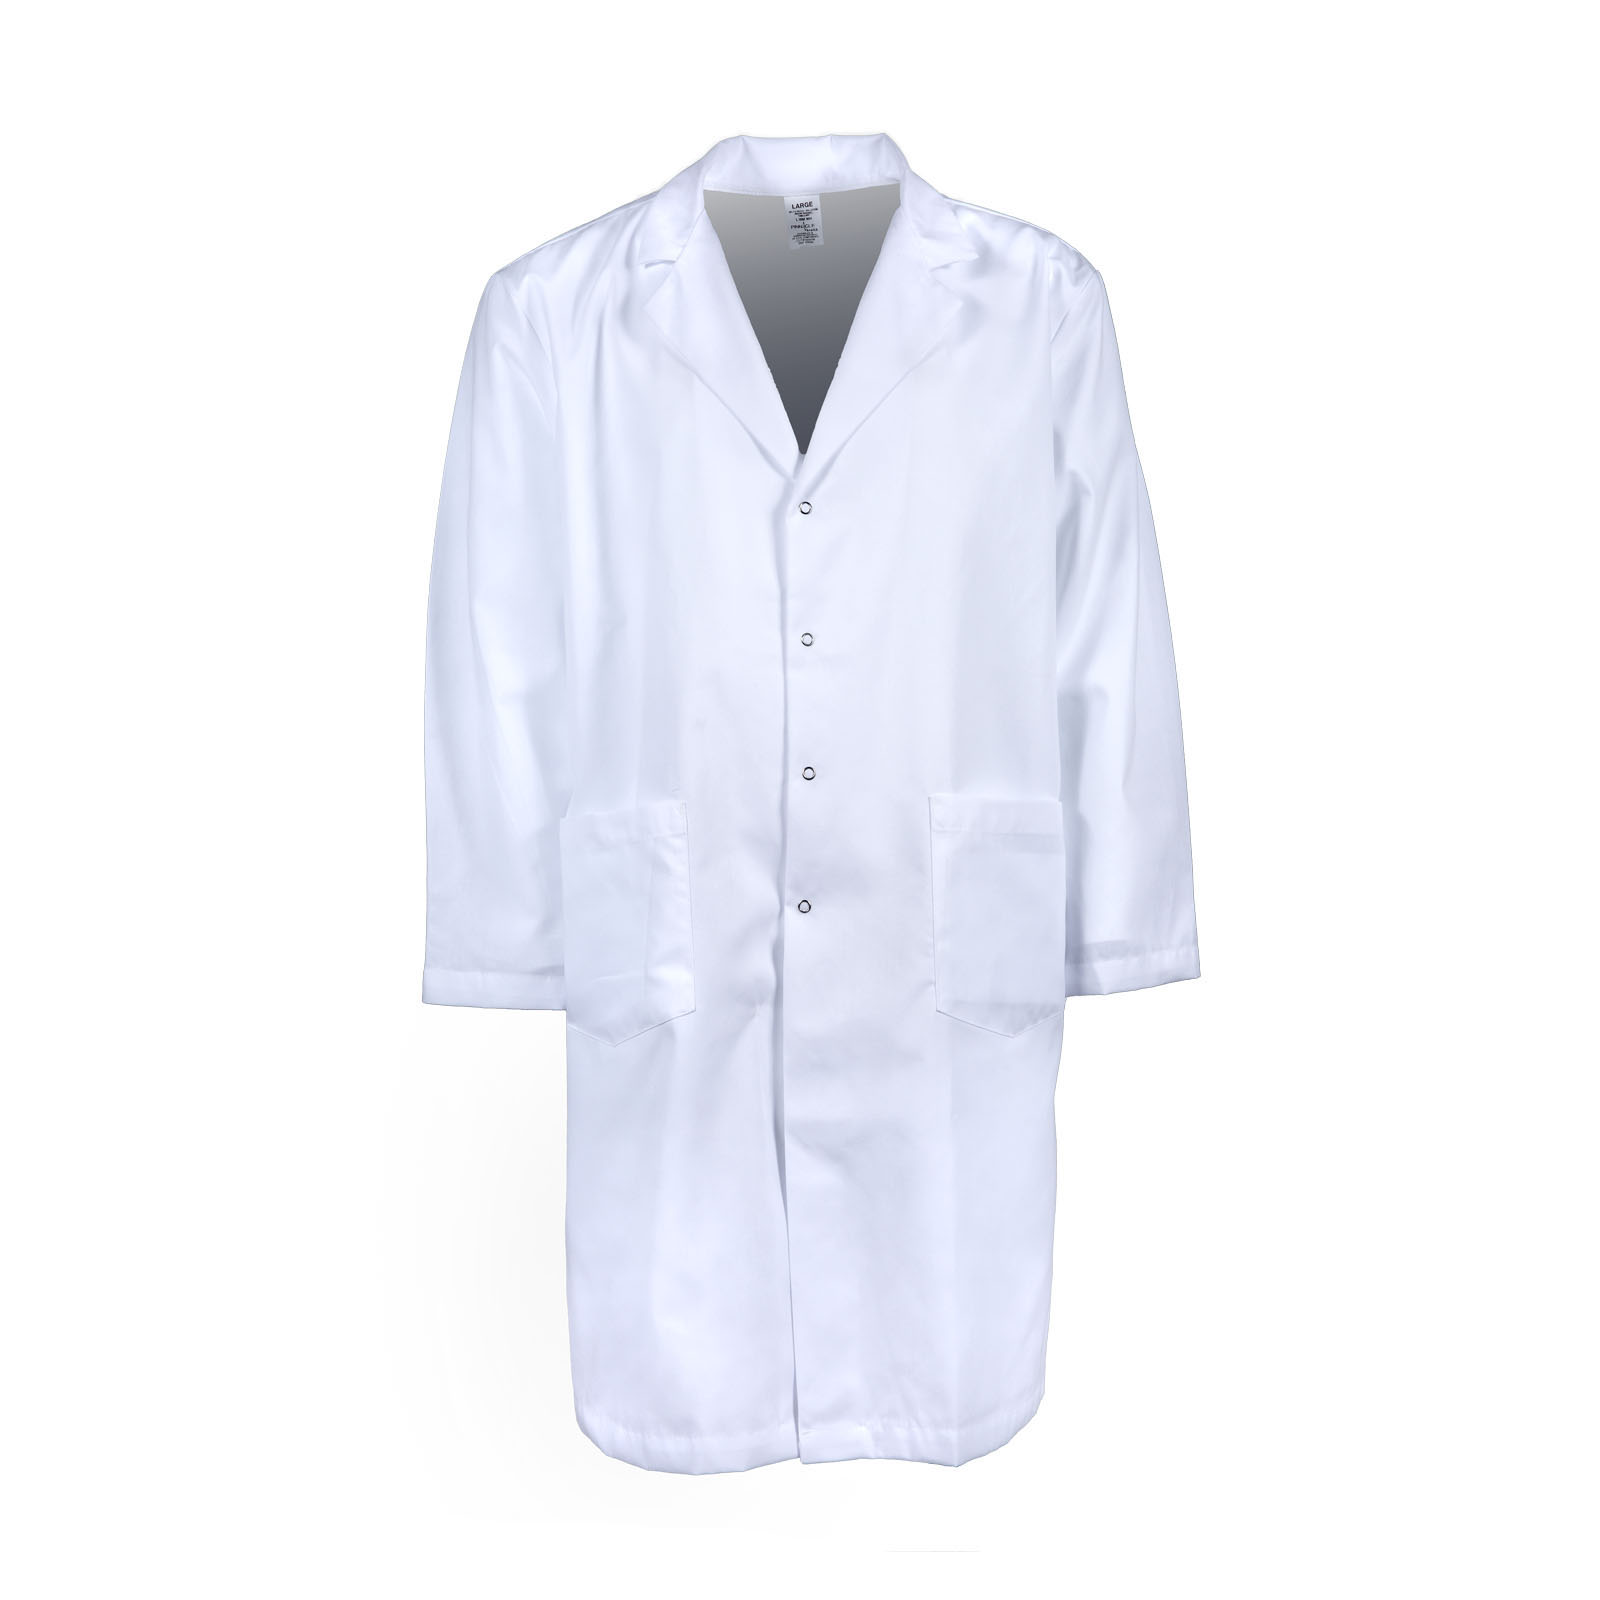 #L18M Men's Pinnacle Textile Lab Coat w/ Snap Front, White